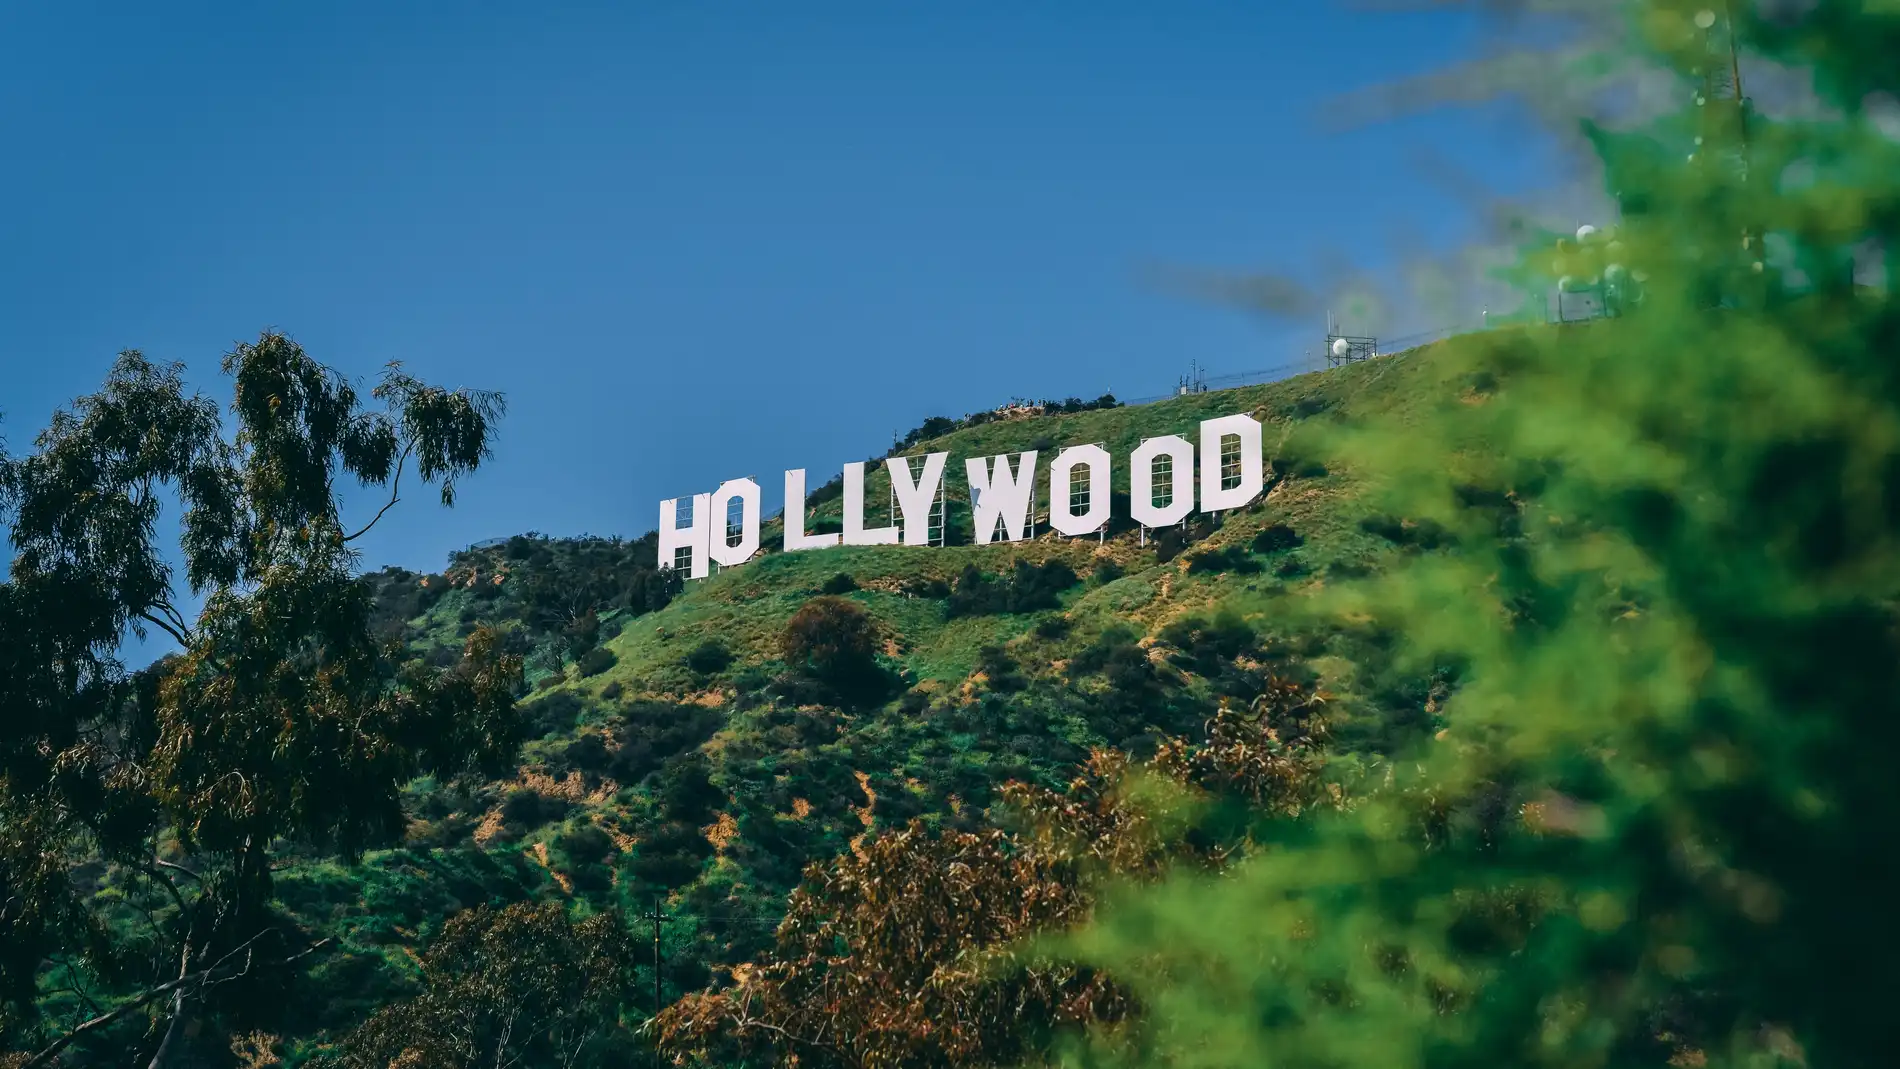 Los actores de Hollywood llegan a un acuerdo histórico de más de mil millones de dólares 